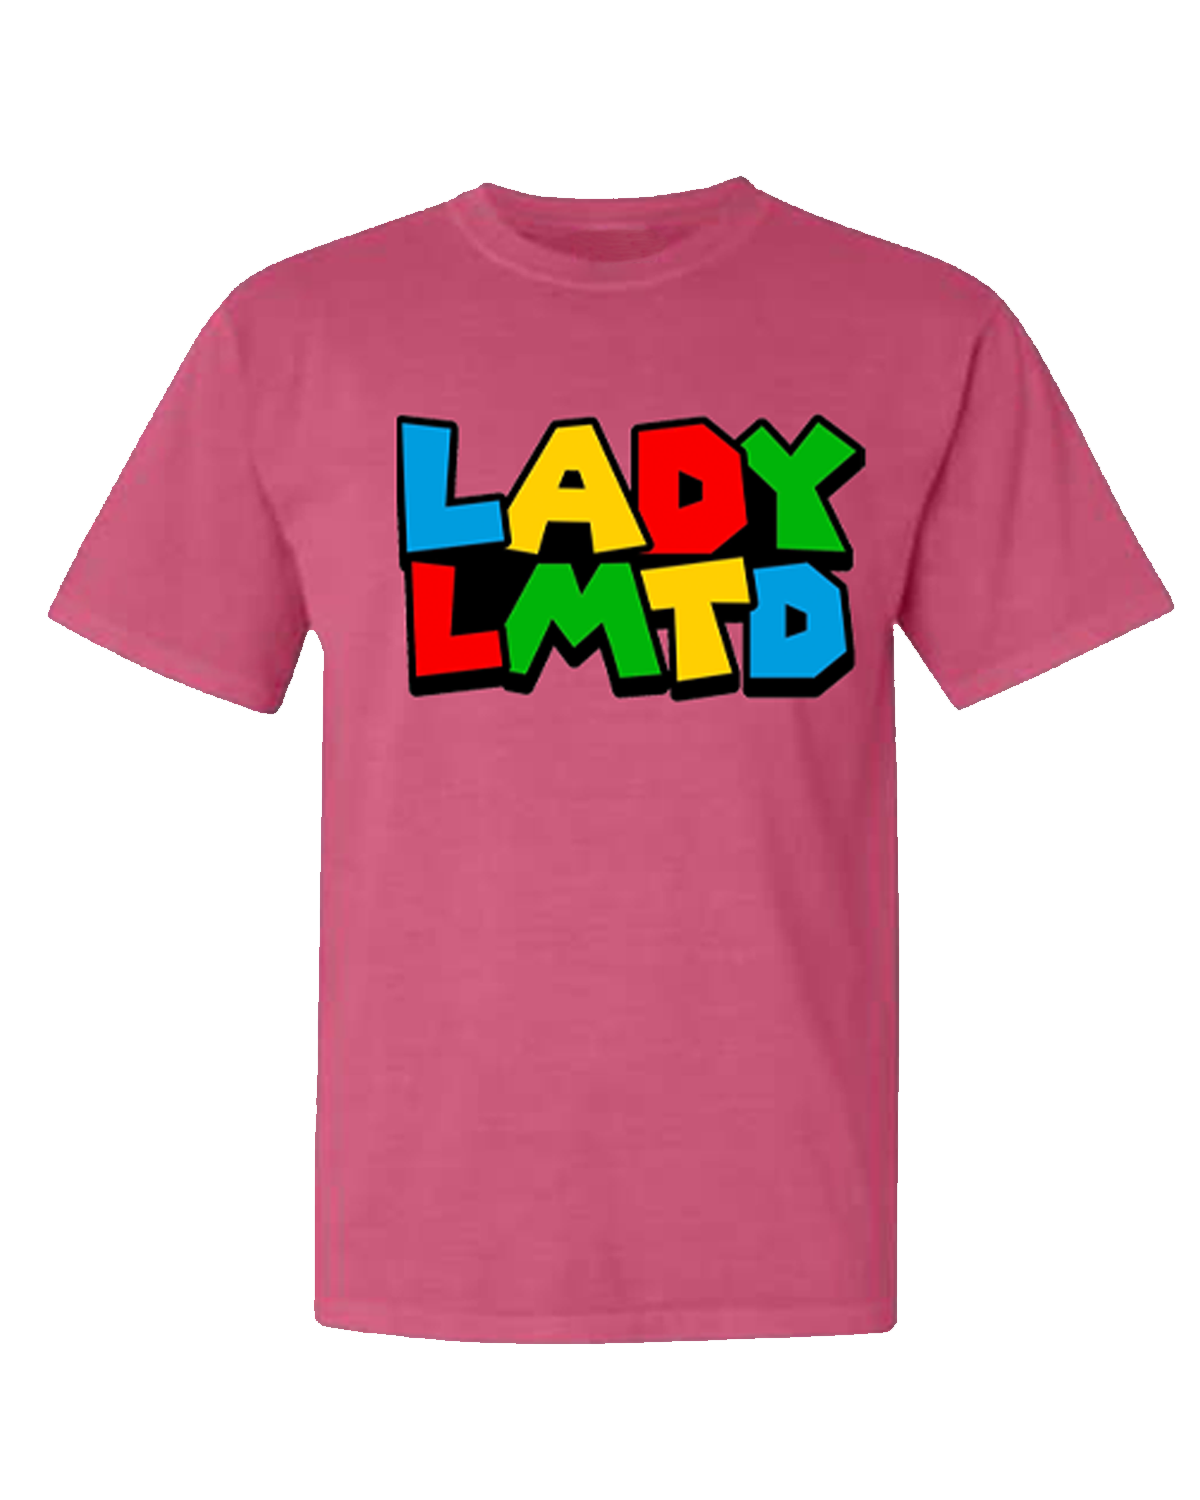 LADY LMTD "SuperMario" Tee